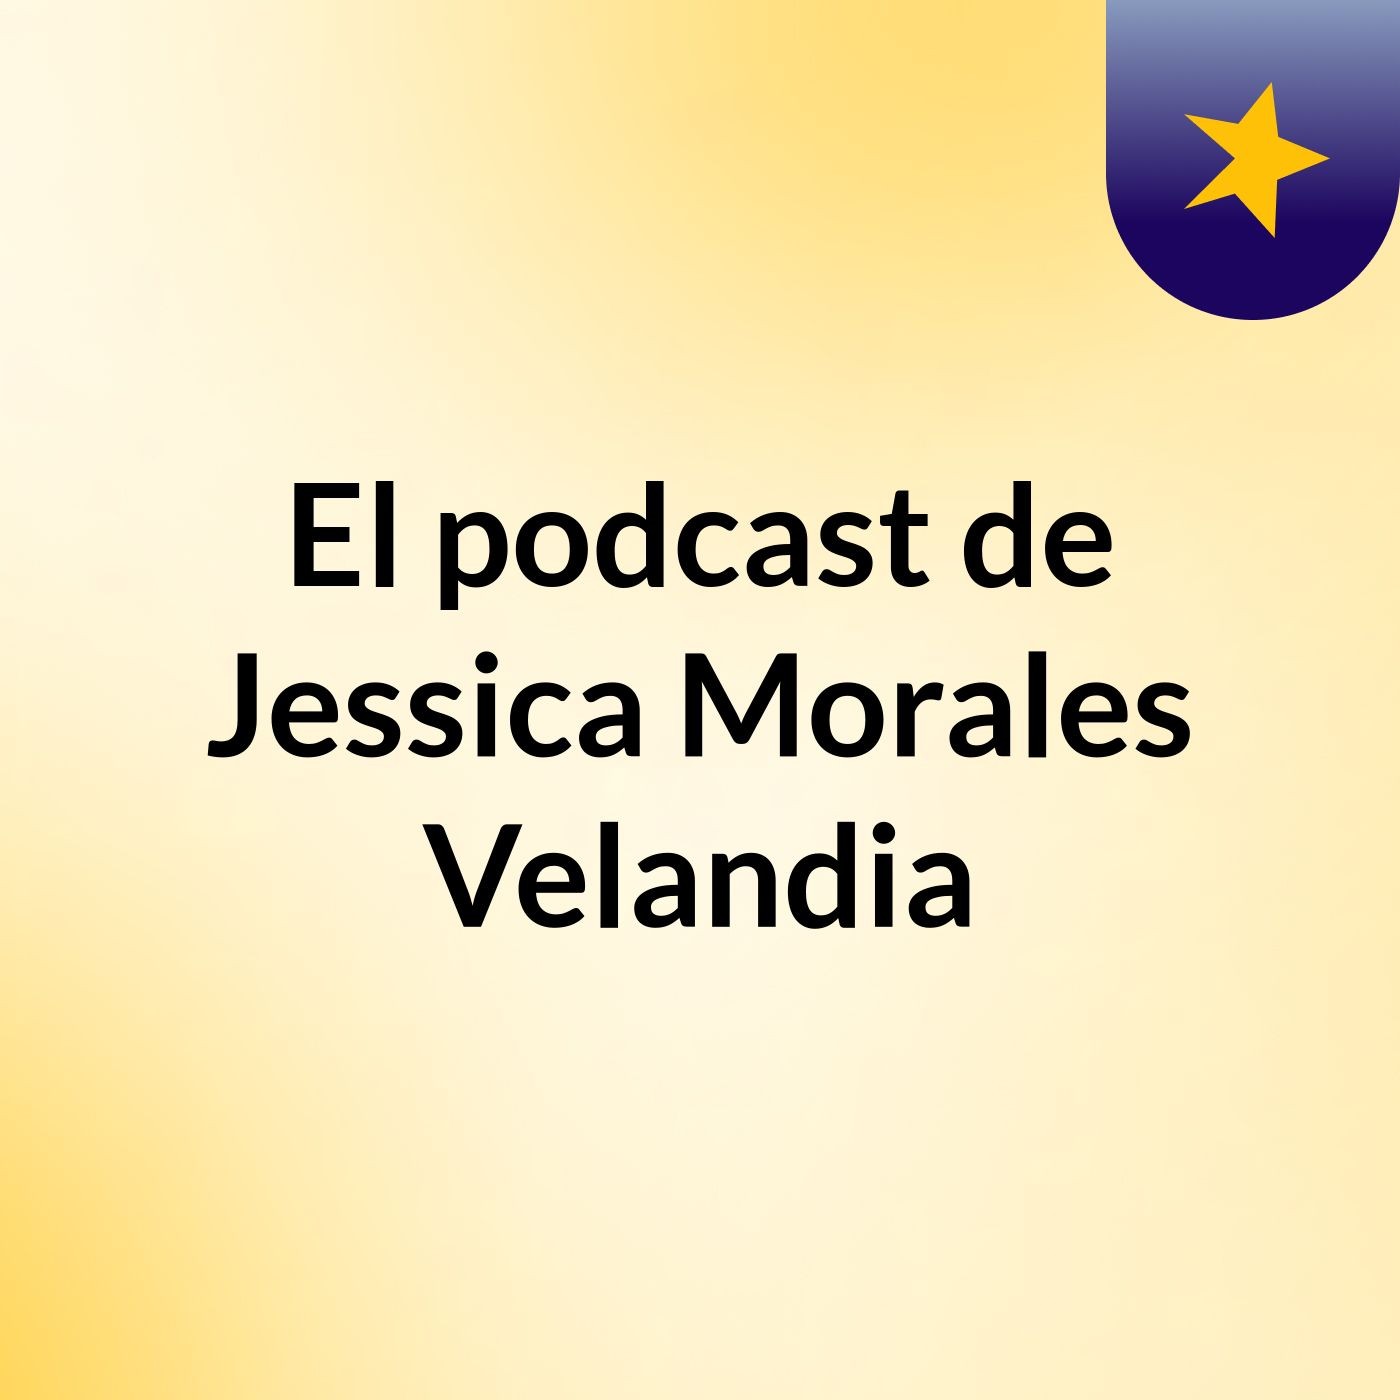 El podcast de Jessica Morales Velandia